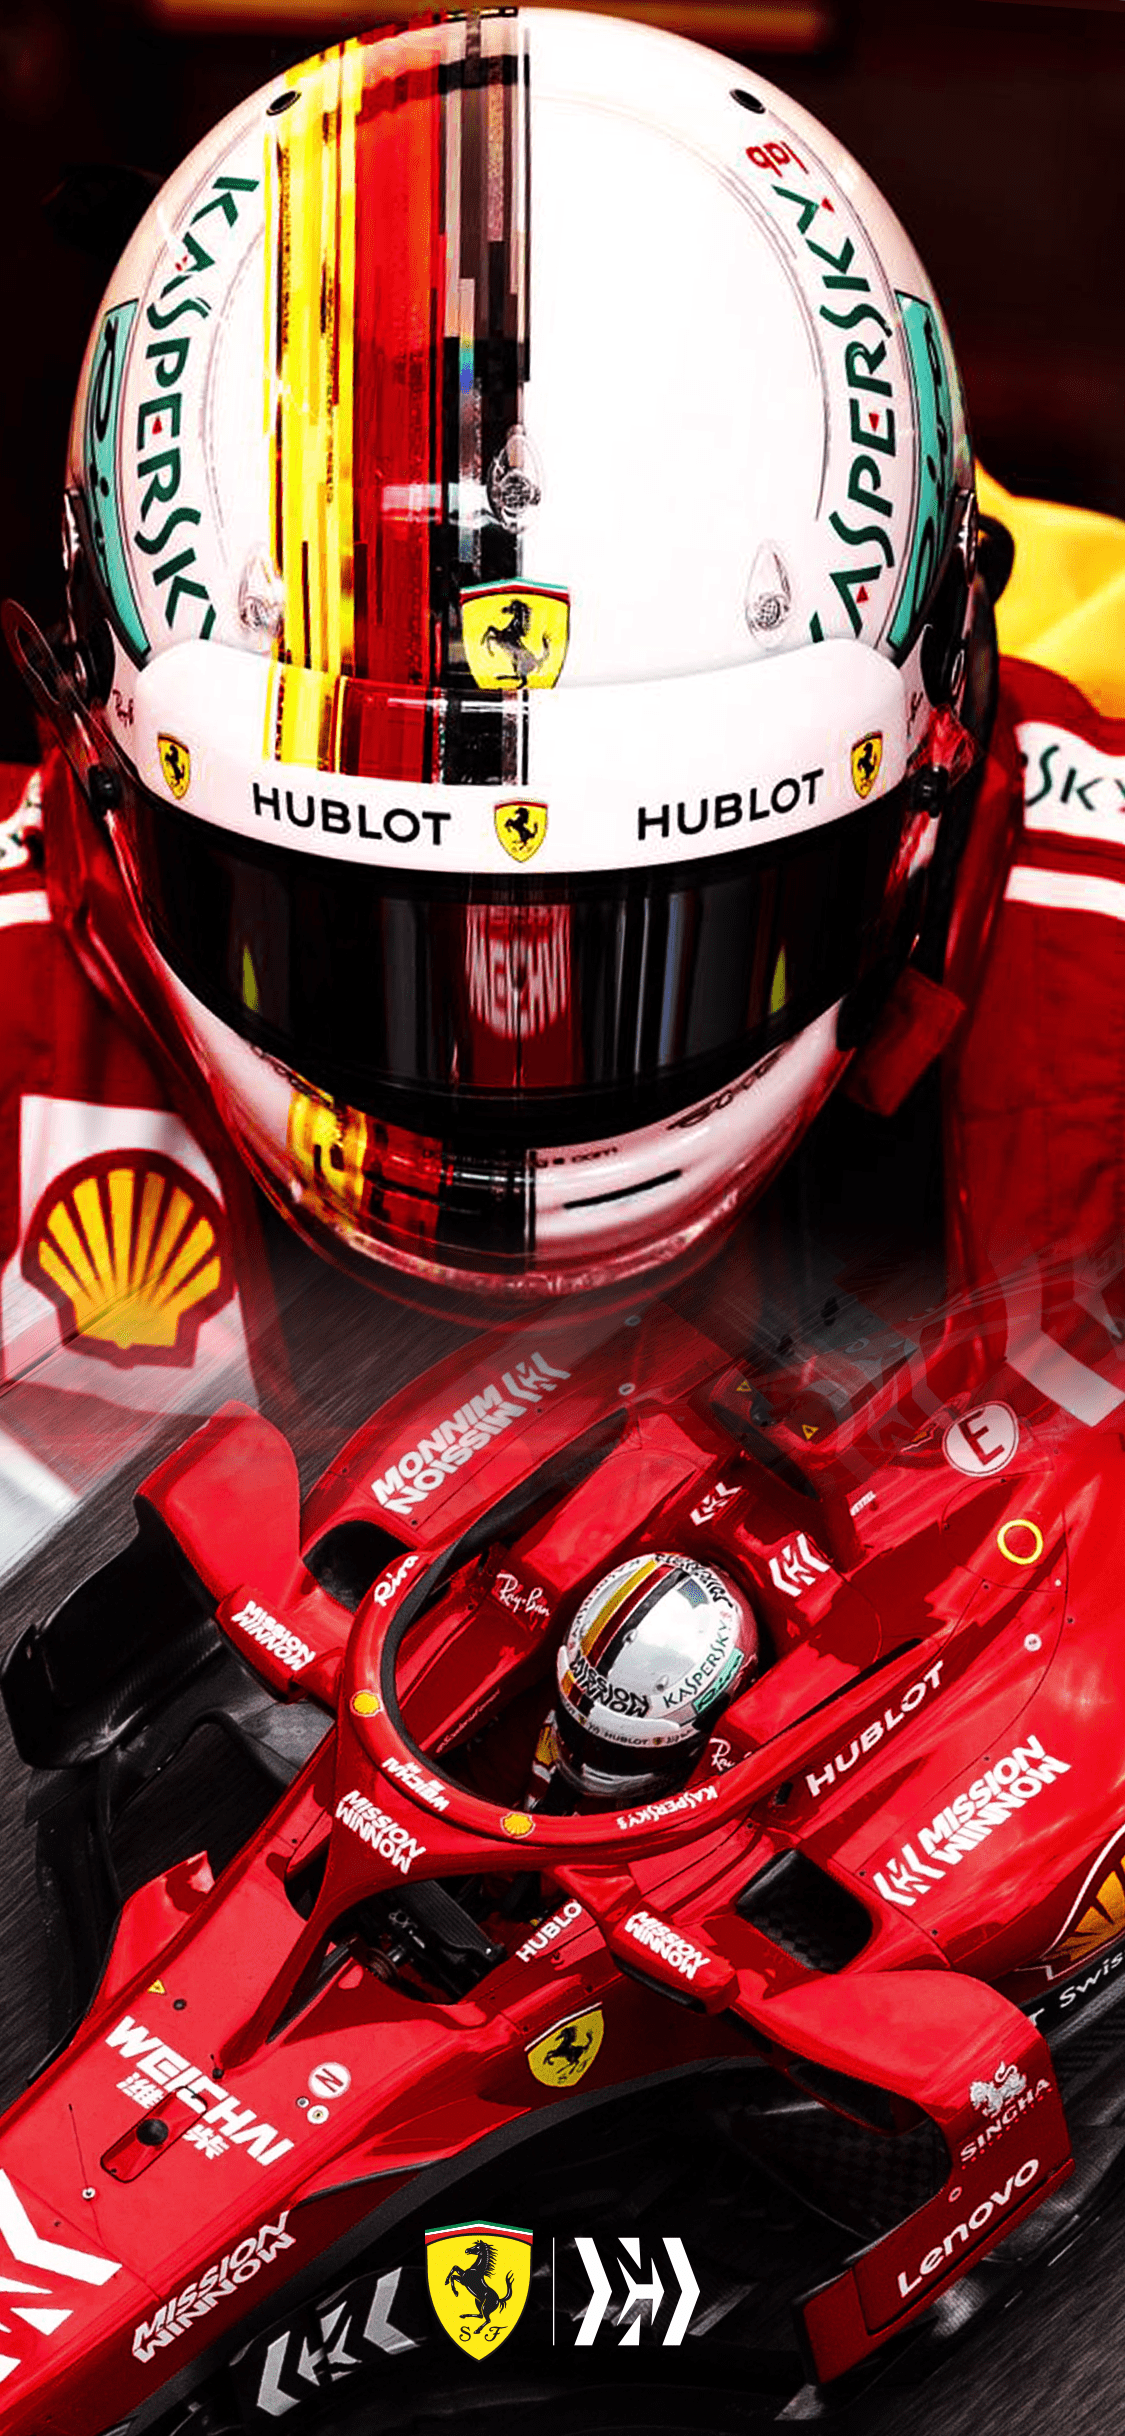 Sebastian Vettel Wallpapers - Top Free Sebastian Vettel Backgrounds